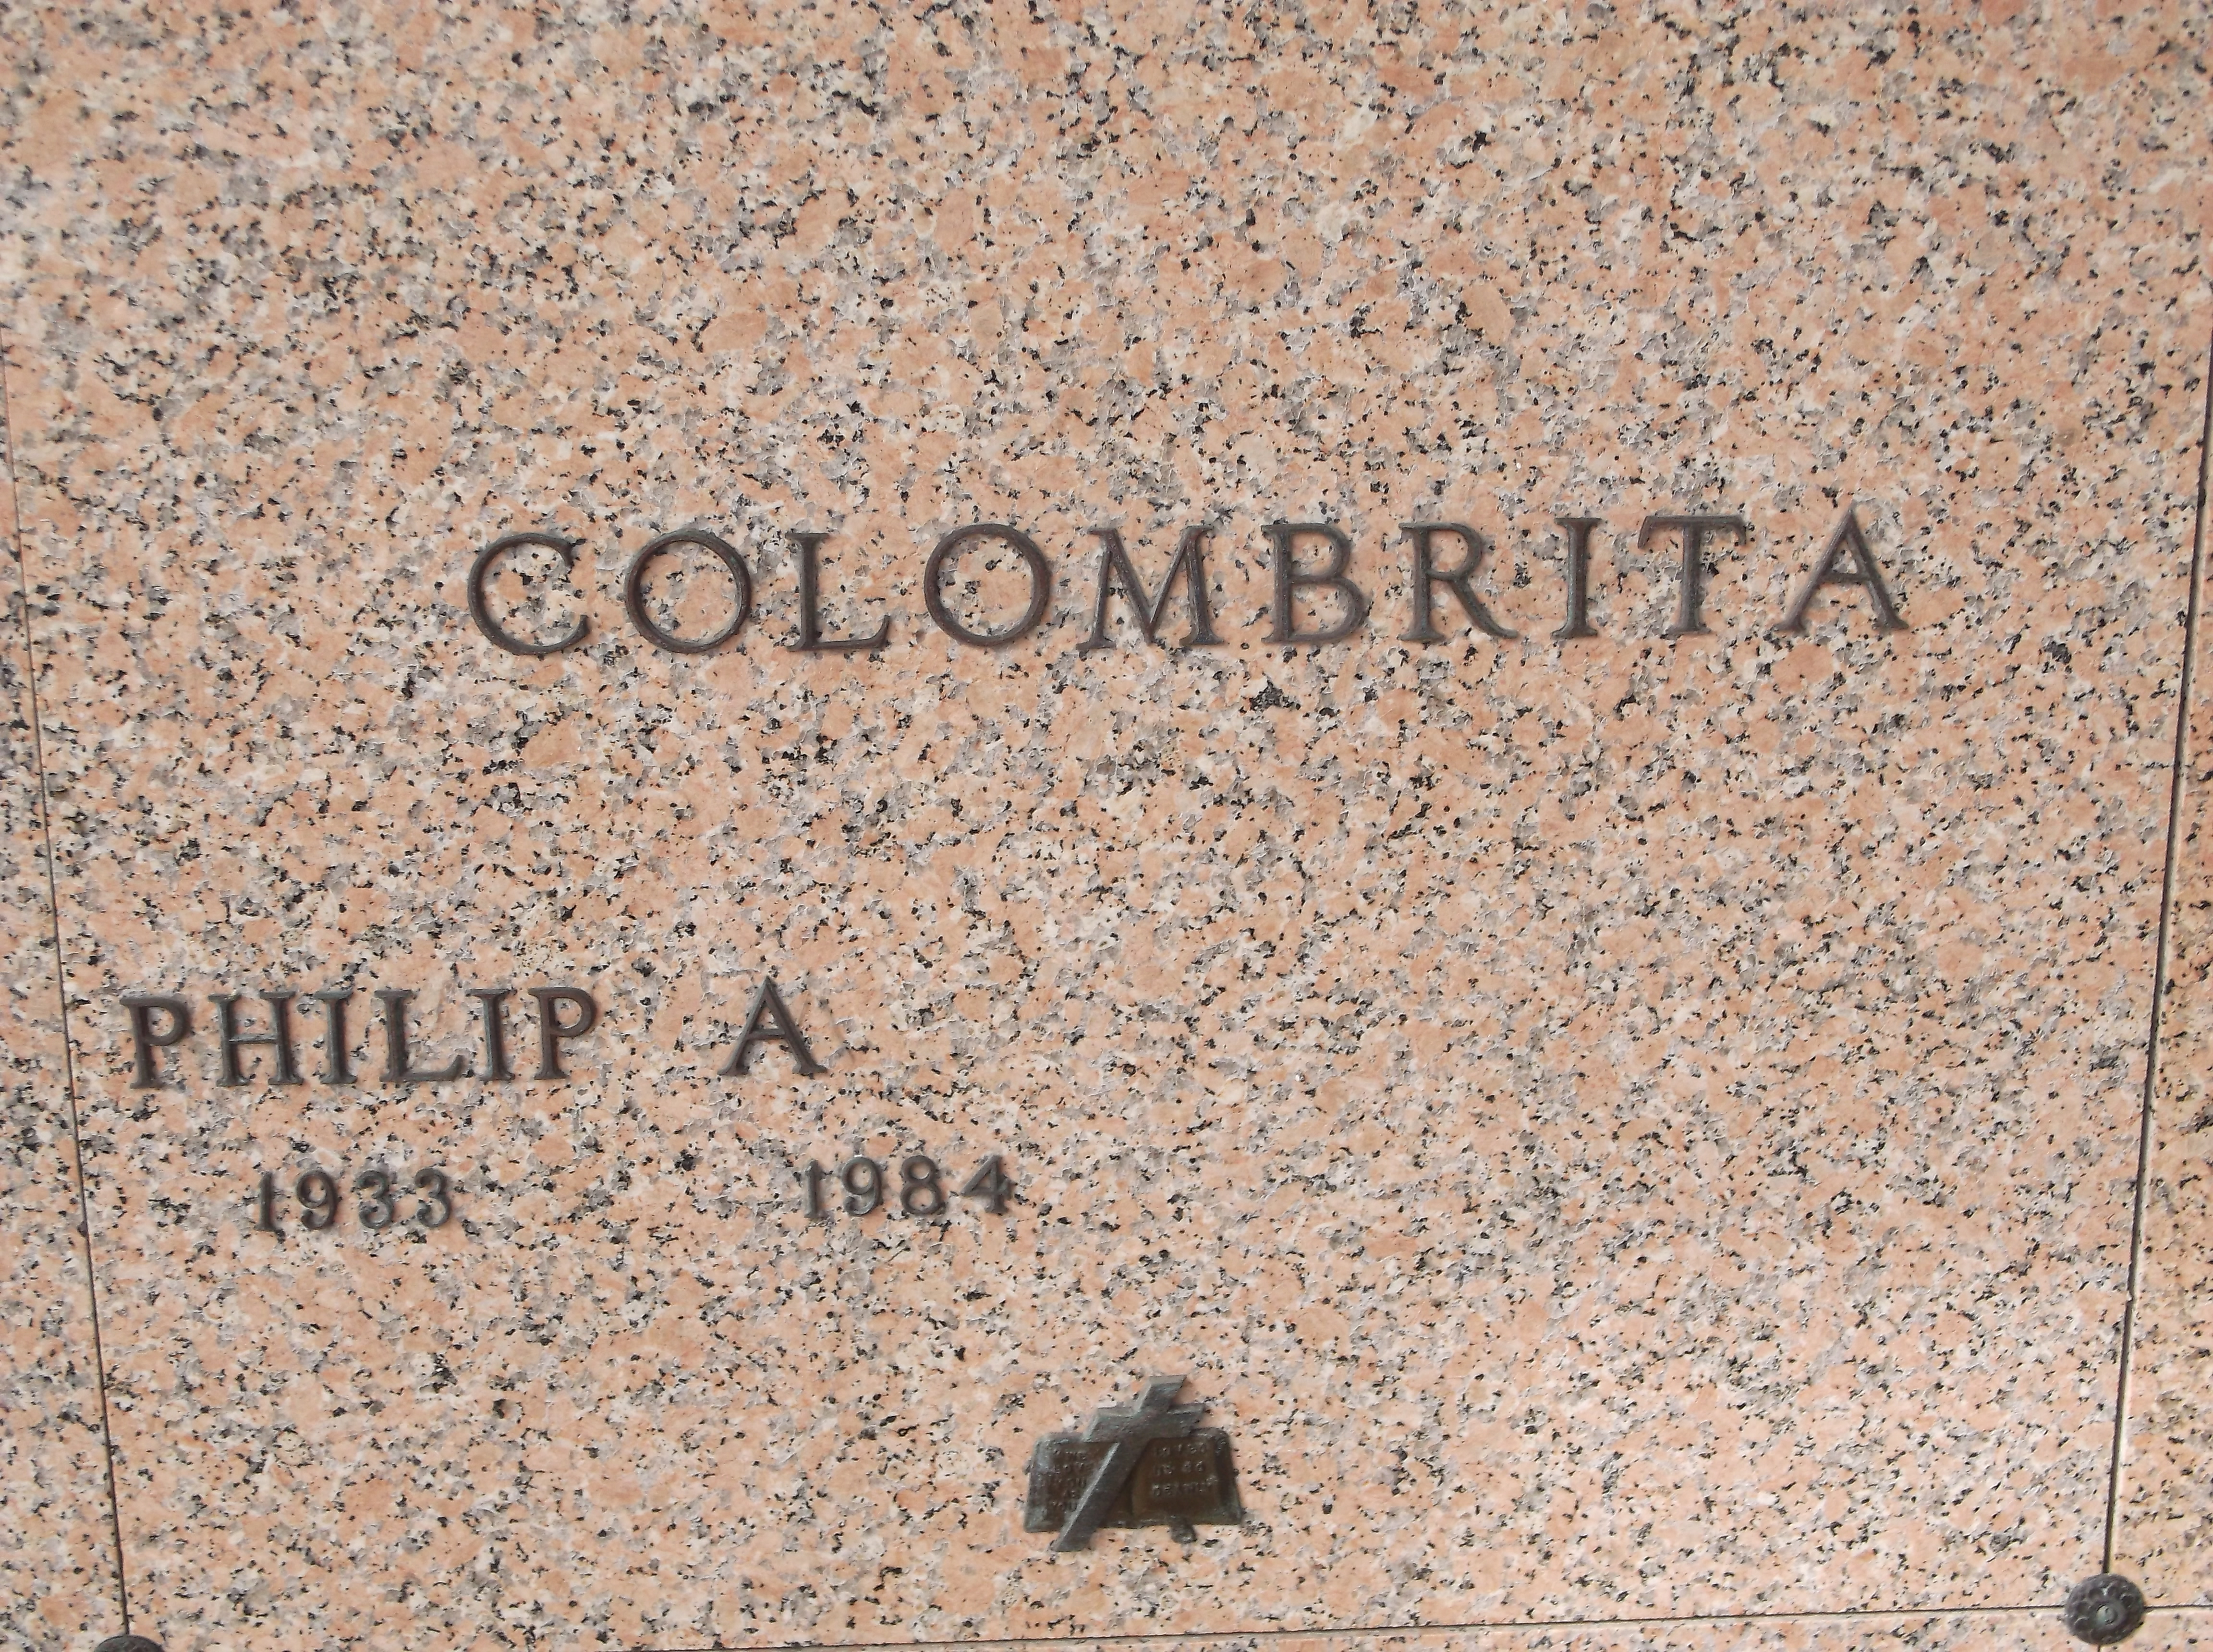 Philip A Colombrita